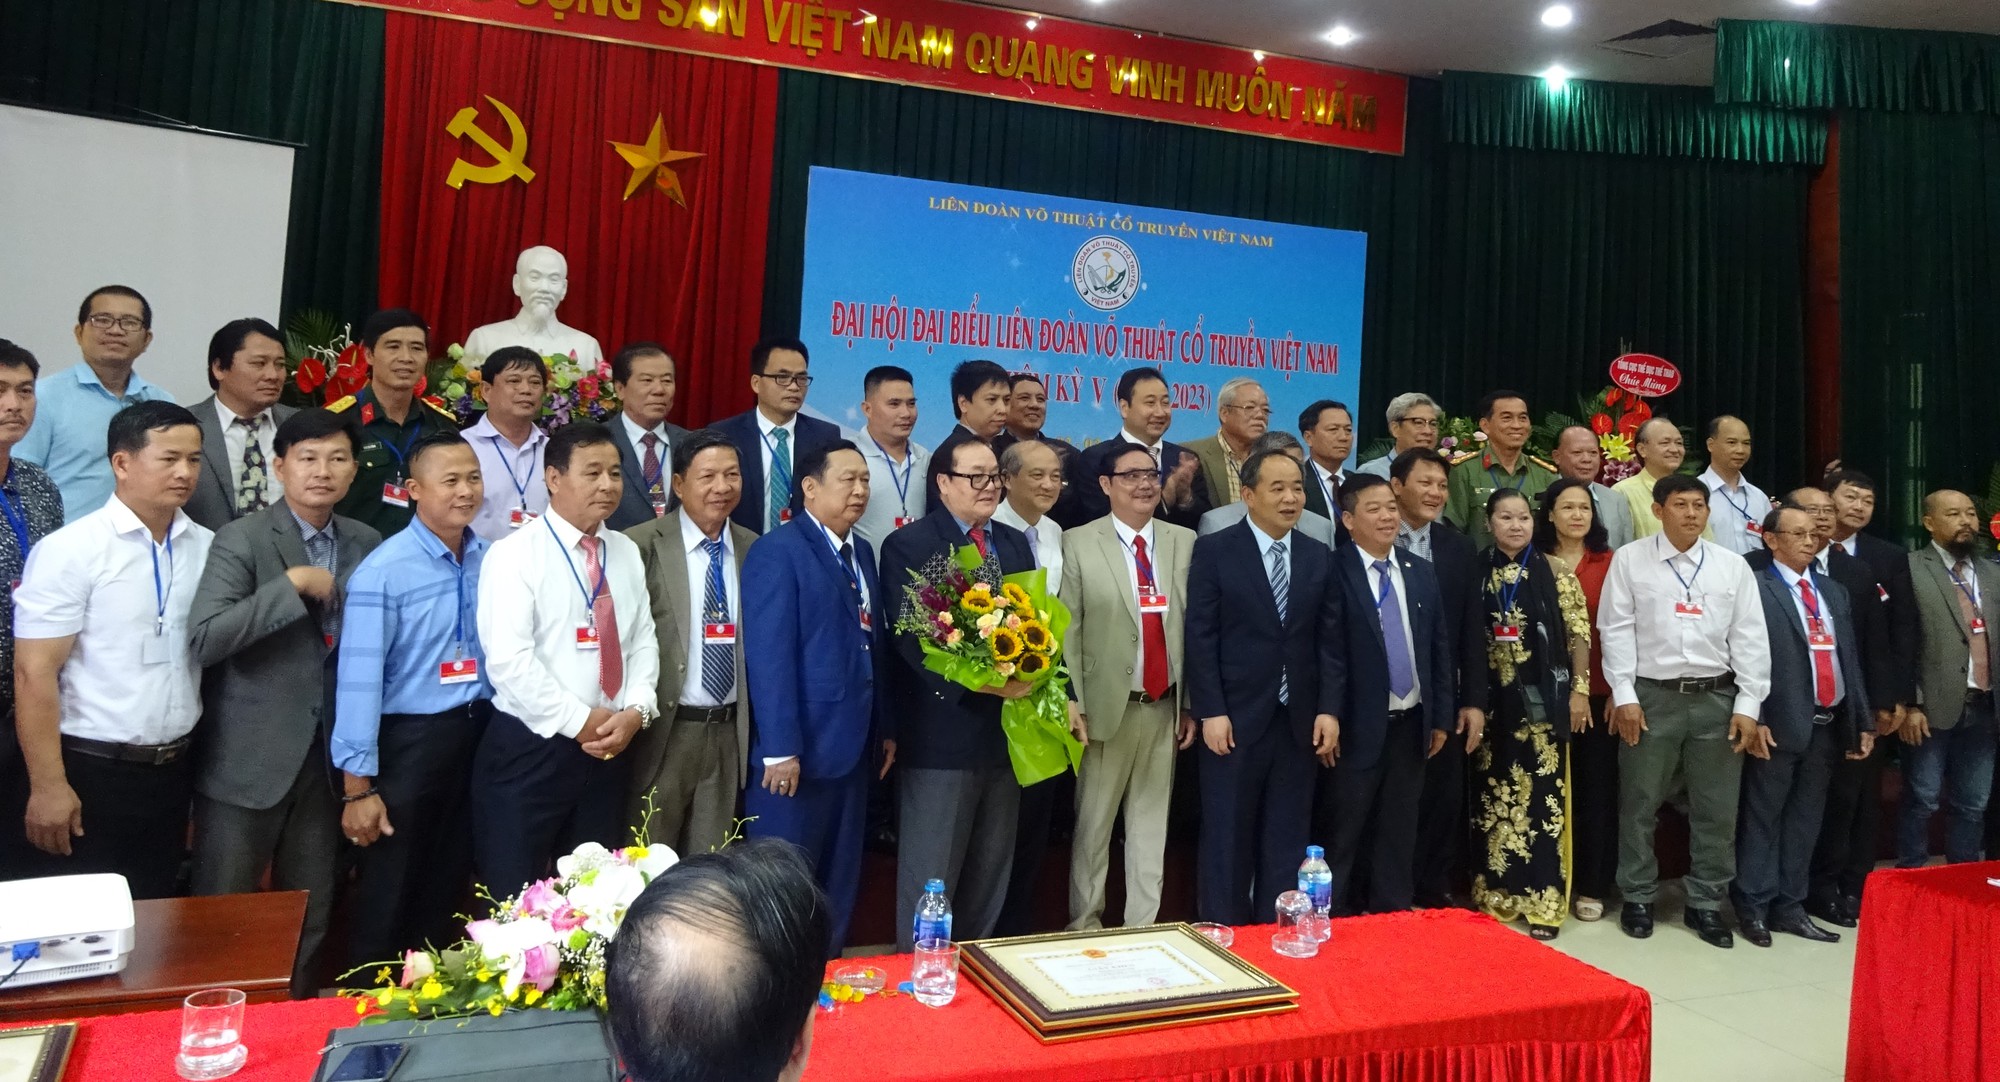 Đại hội Liên đoàn Võ cổ truyền Việt Nam nhiệm kỳ V: Ông Hoàng Vĩnh Giang tiếp tục giữ vị trí Chủ tịch - Ảnh 3.